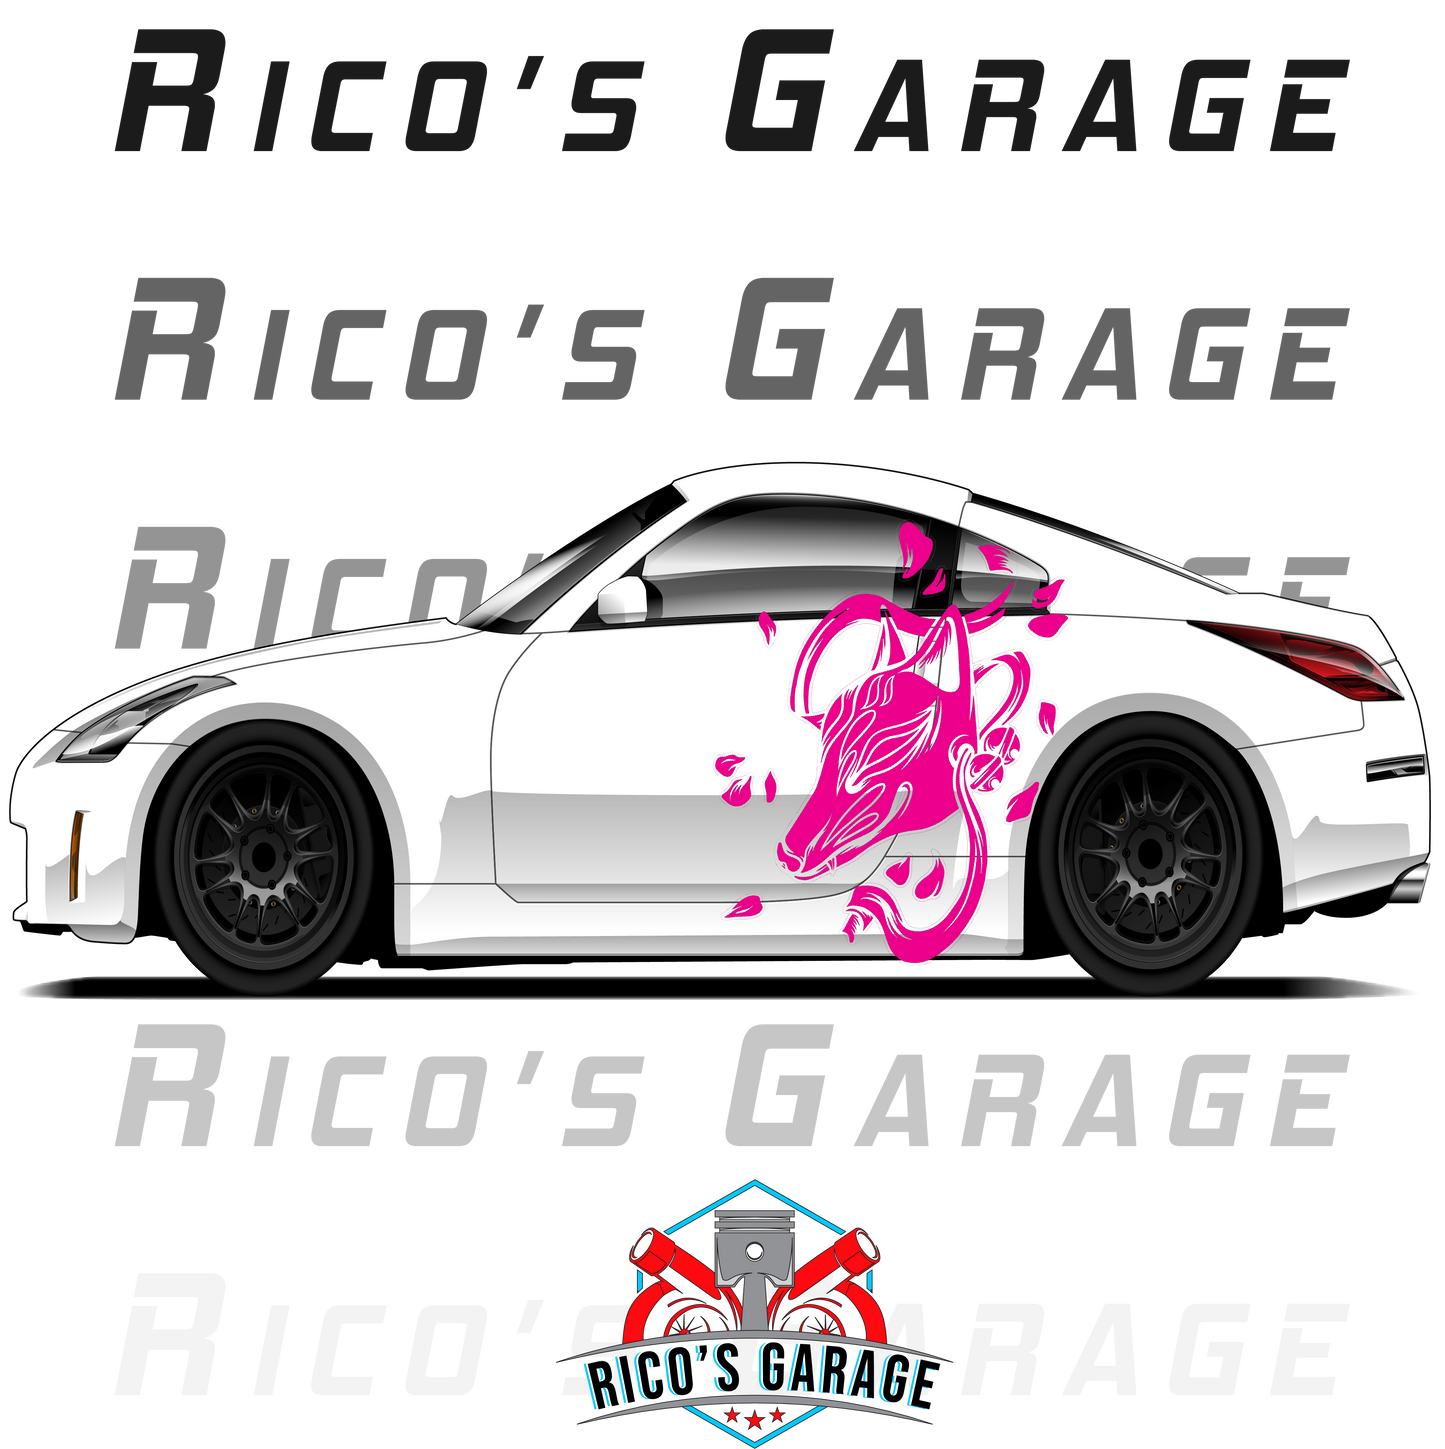 Kitsune 350Z Livery Kit - Rico's Garage